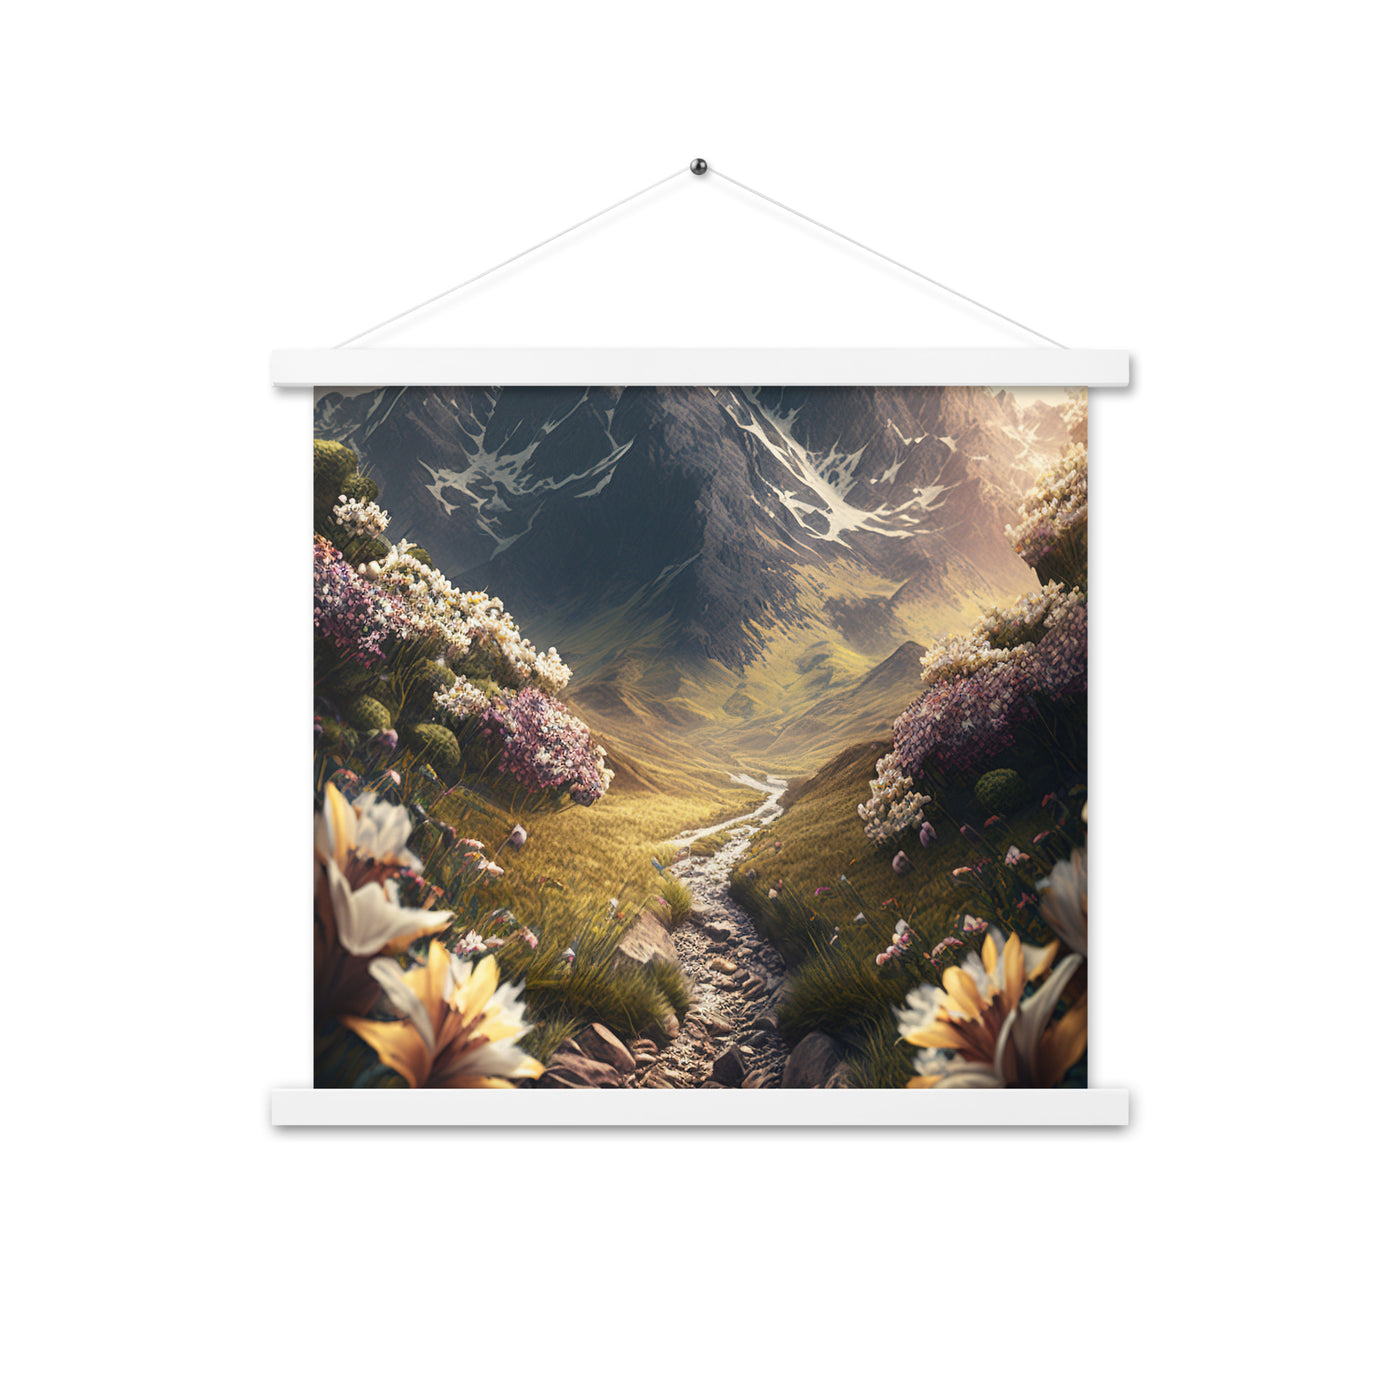 Epischer Berg, steiniger Weg und Blumen - Realistische Malerei - Premium Poster mit Aufhängung berge xxx 45.7 x 45.7 cm